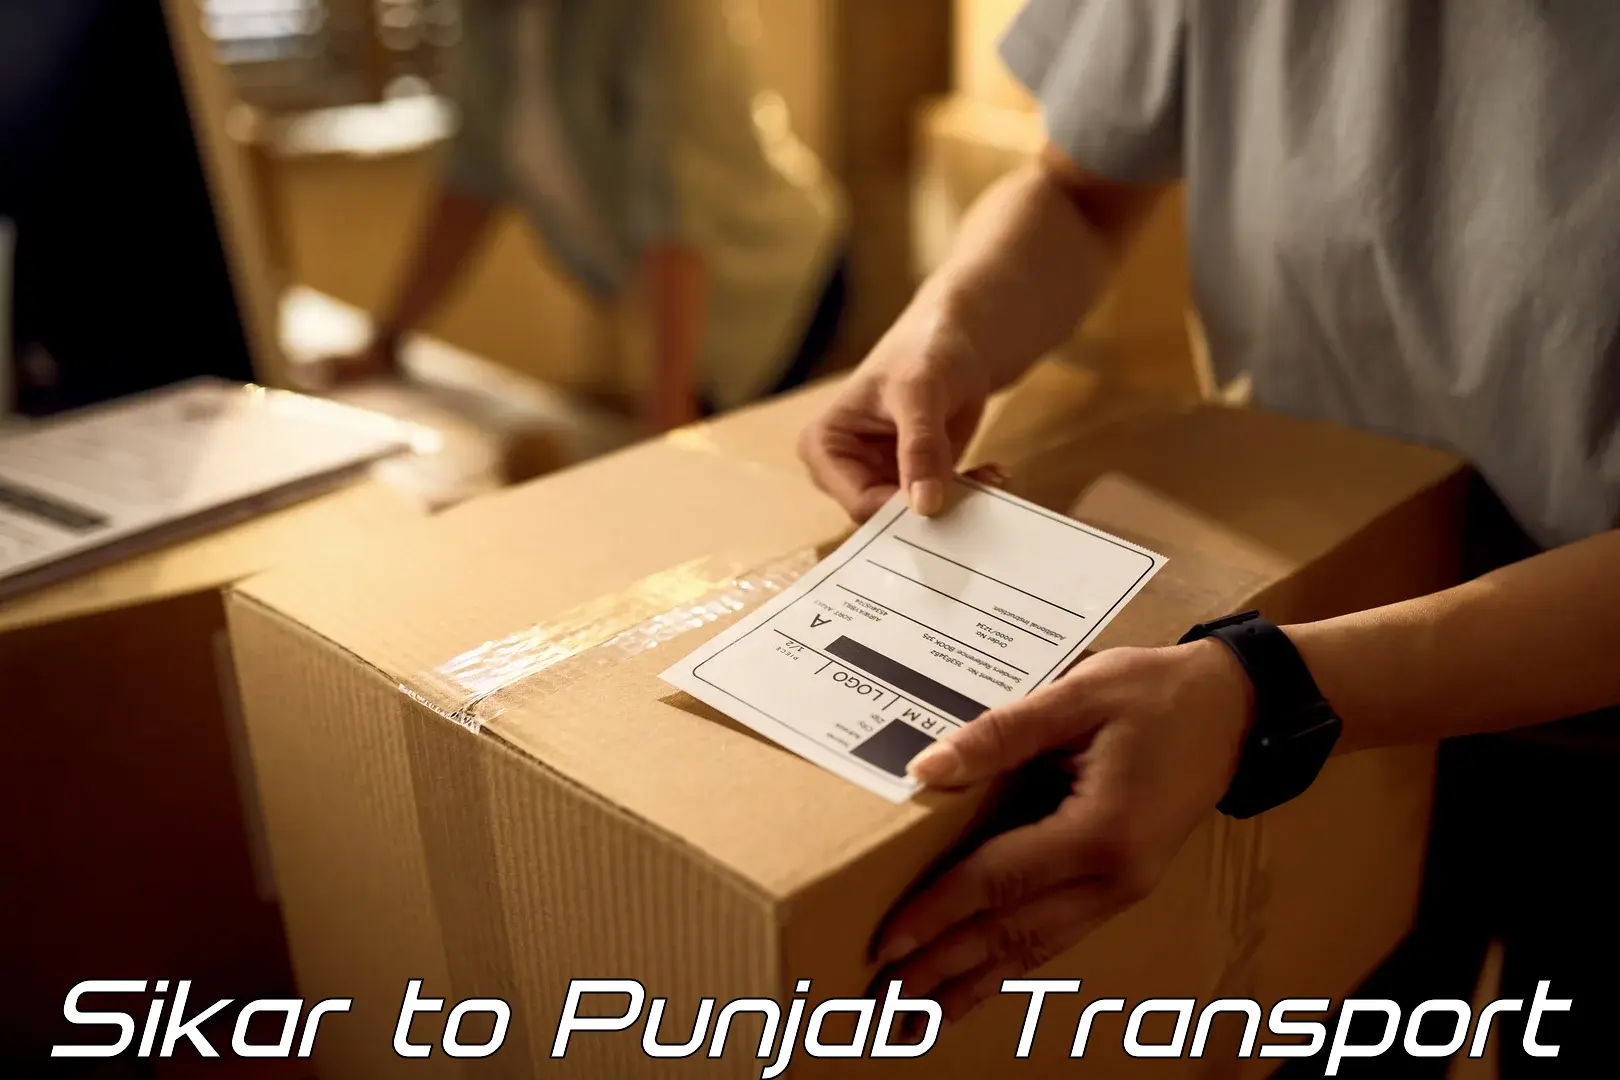 Bike shipping service Sikar to Punjab